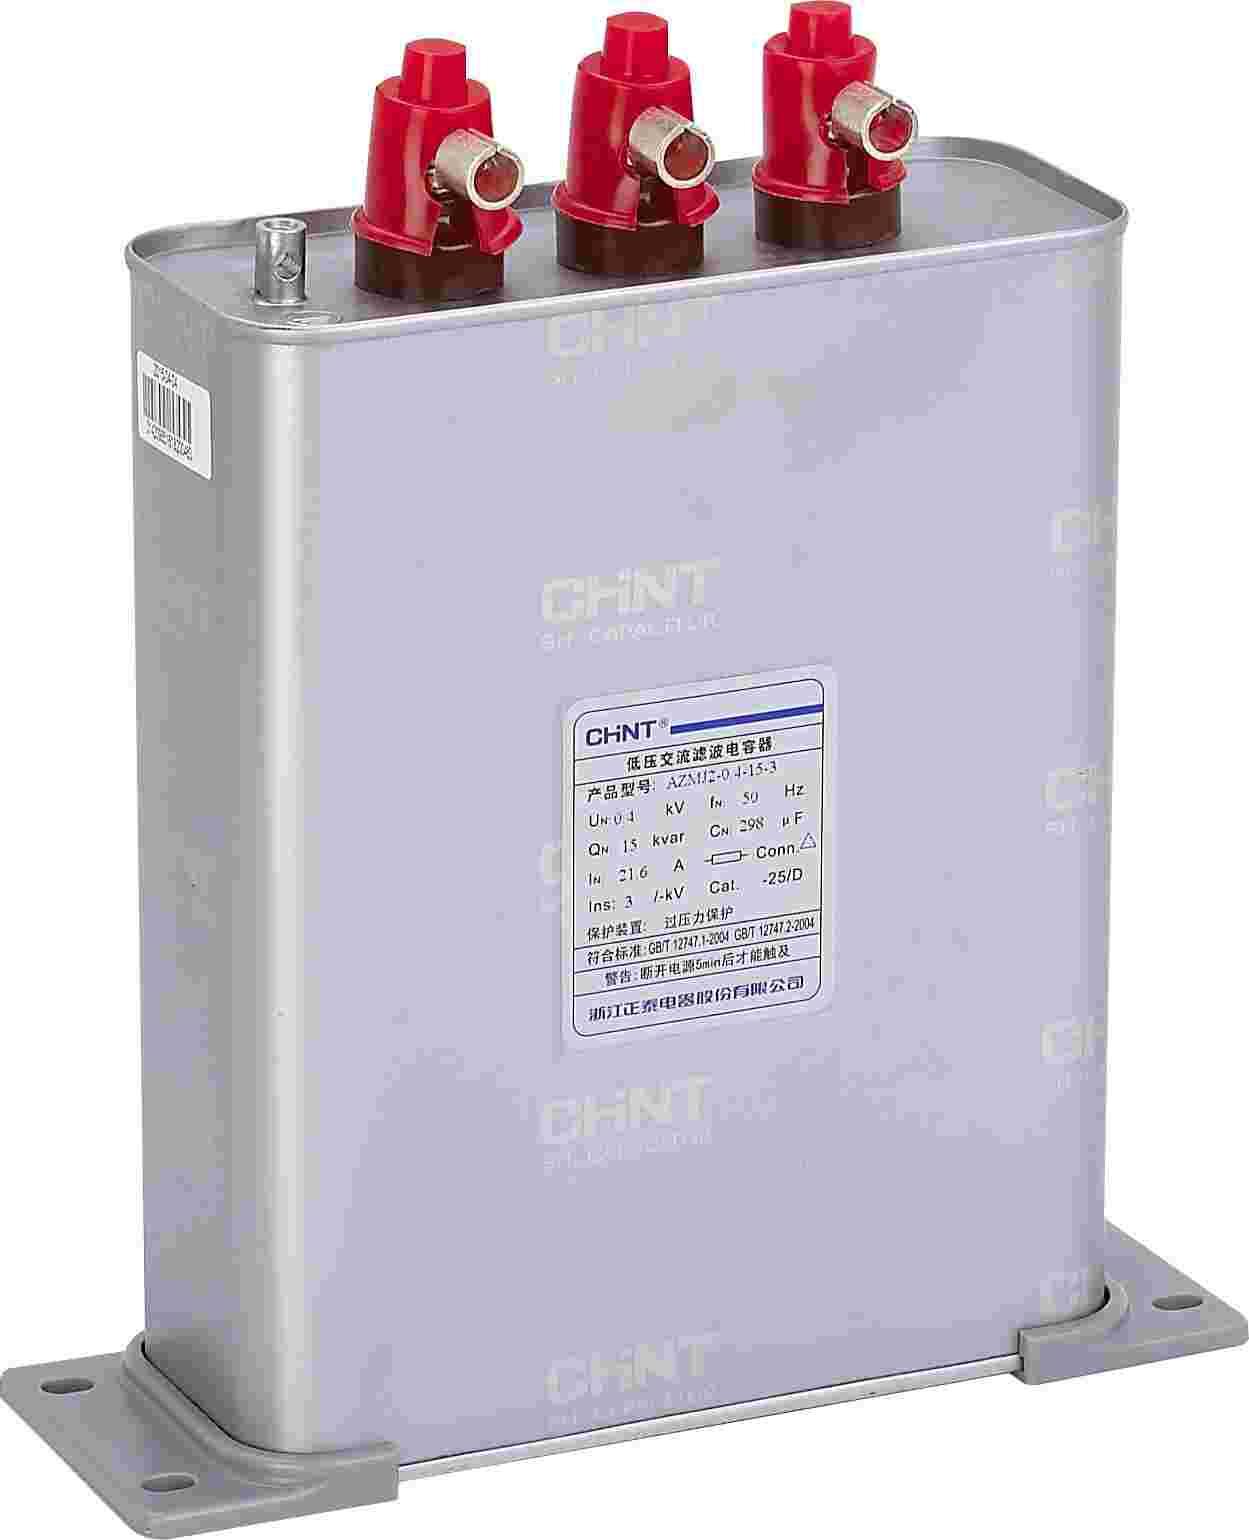 AZMJ2-0.4-15-3 低压交流滤波电容器（抗谐）侧俯图图.png